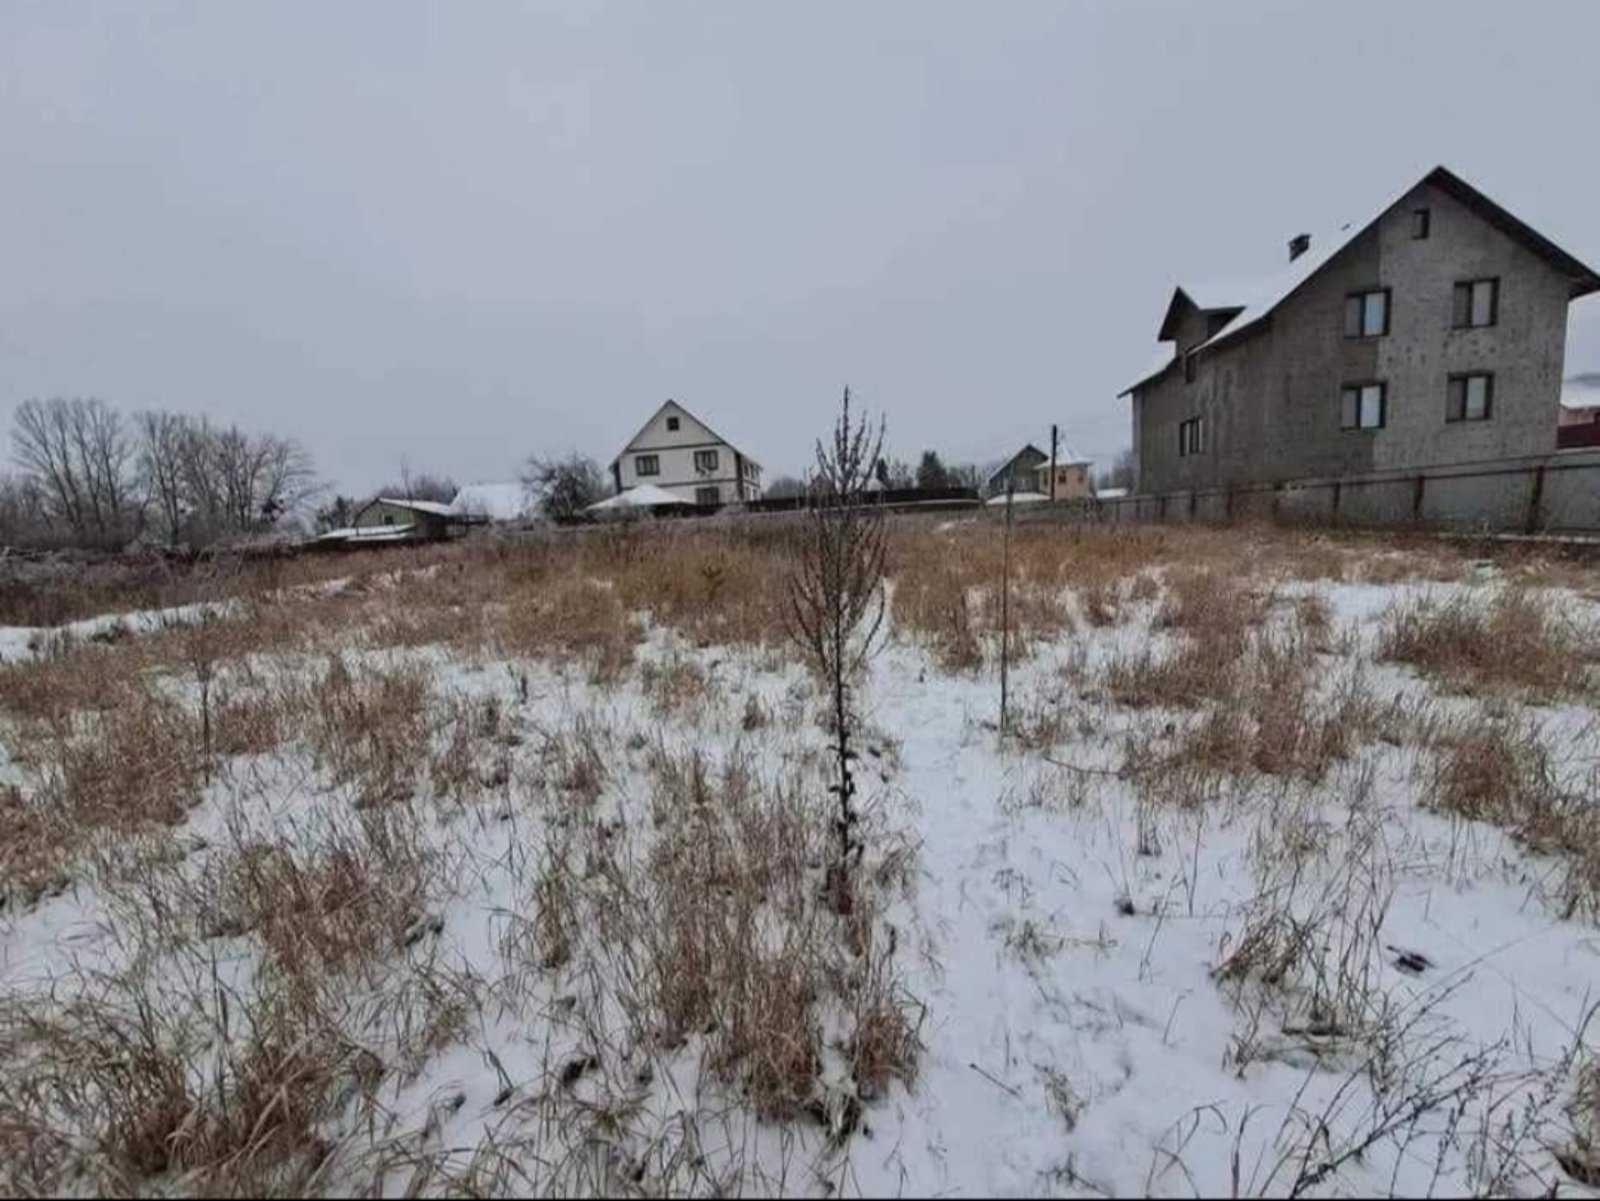 Продается небольшой жилой дом в г. Василькове, Киевской обл.